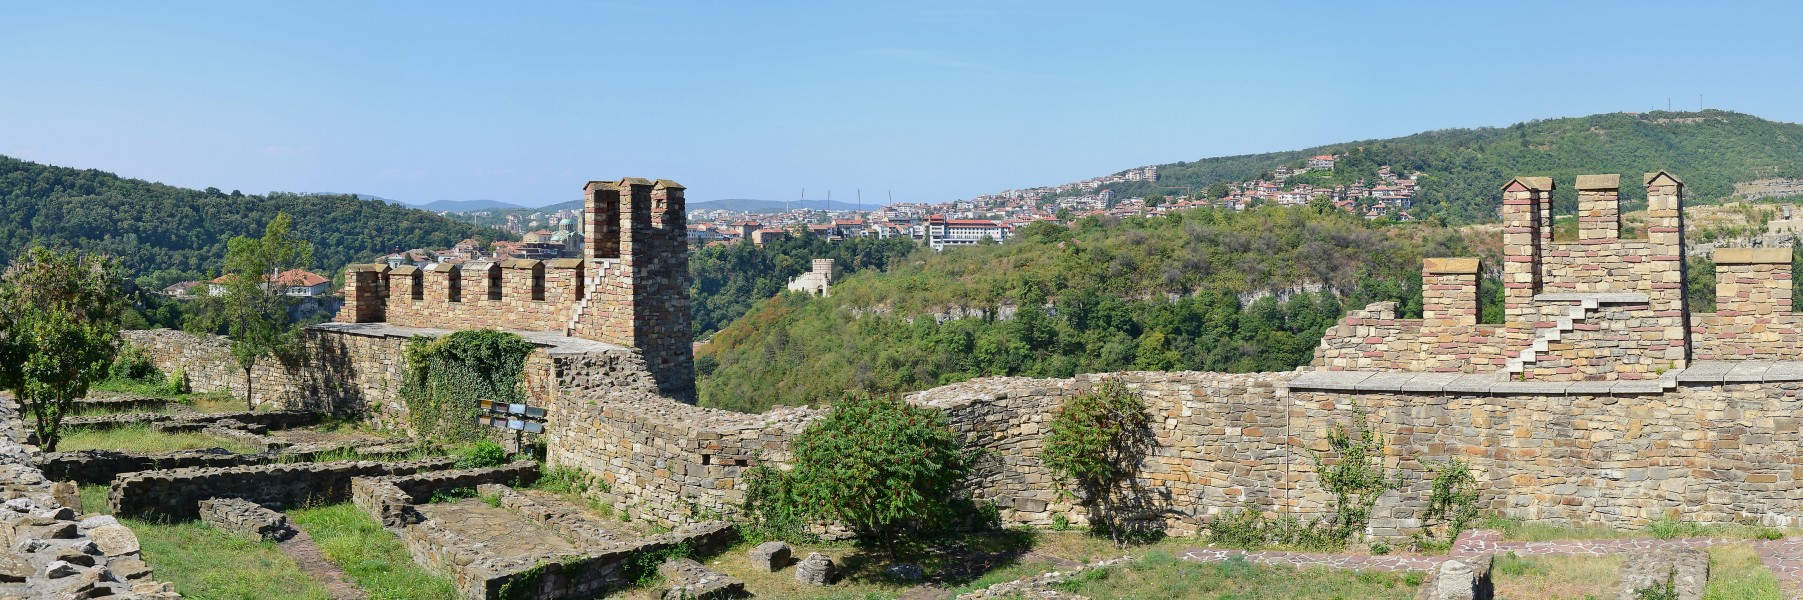 Veliko Tarnovo (Велико Търново) - view from Tsarevets 2